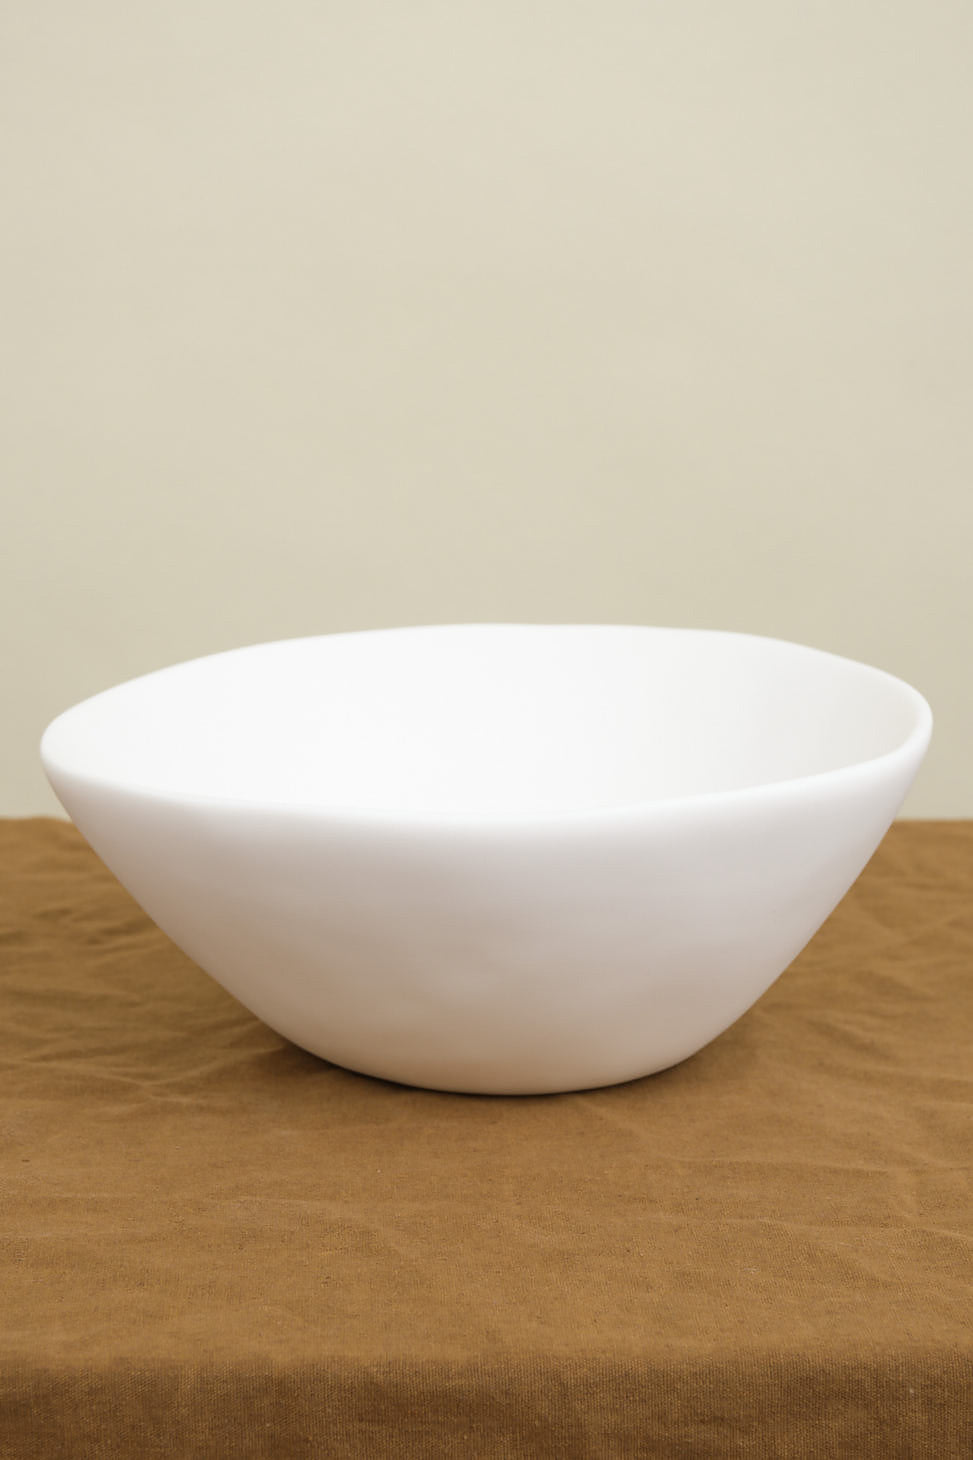 Medium Tapered Bowl on table